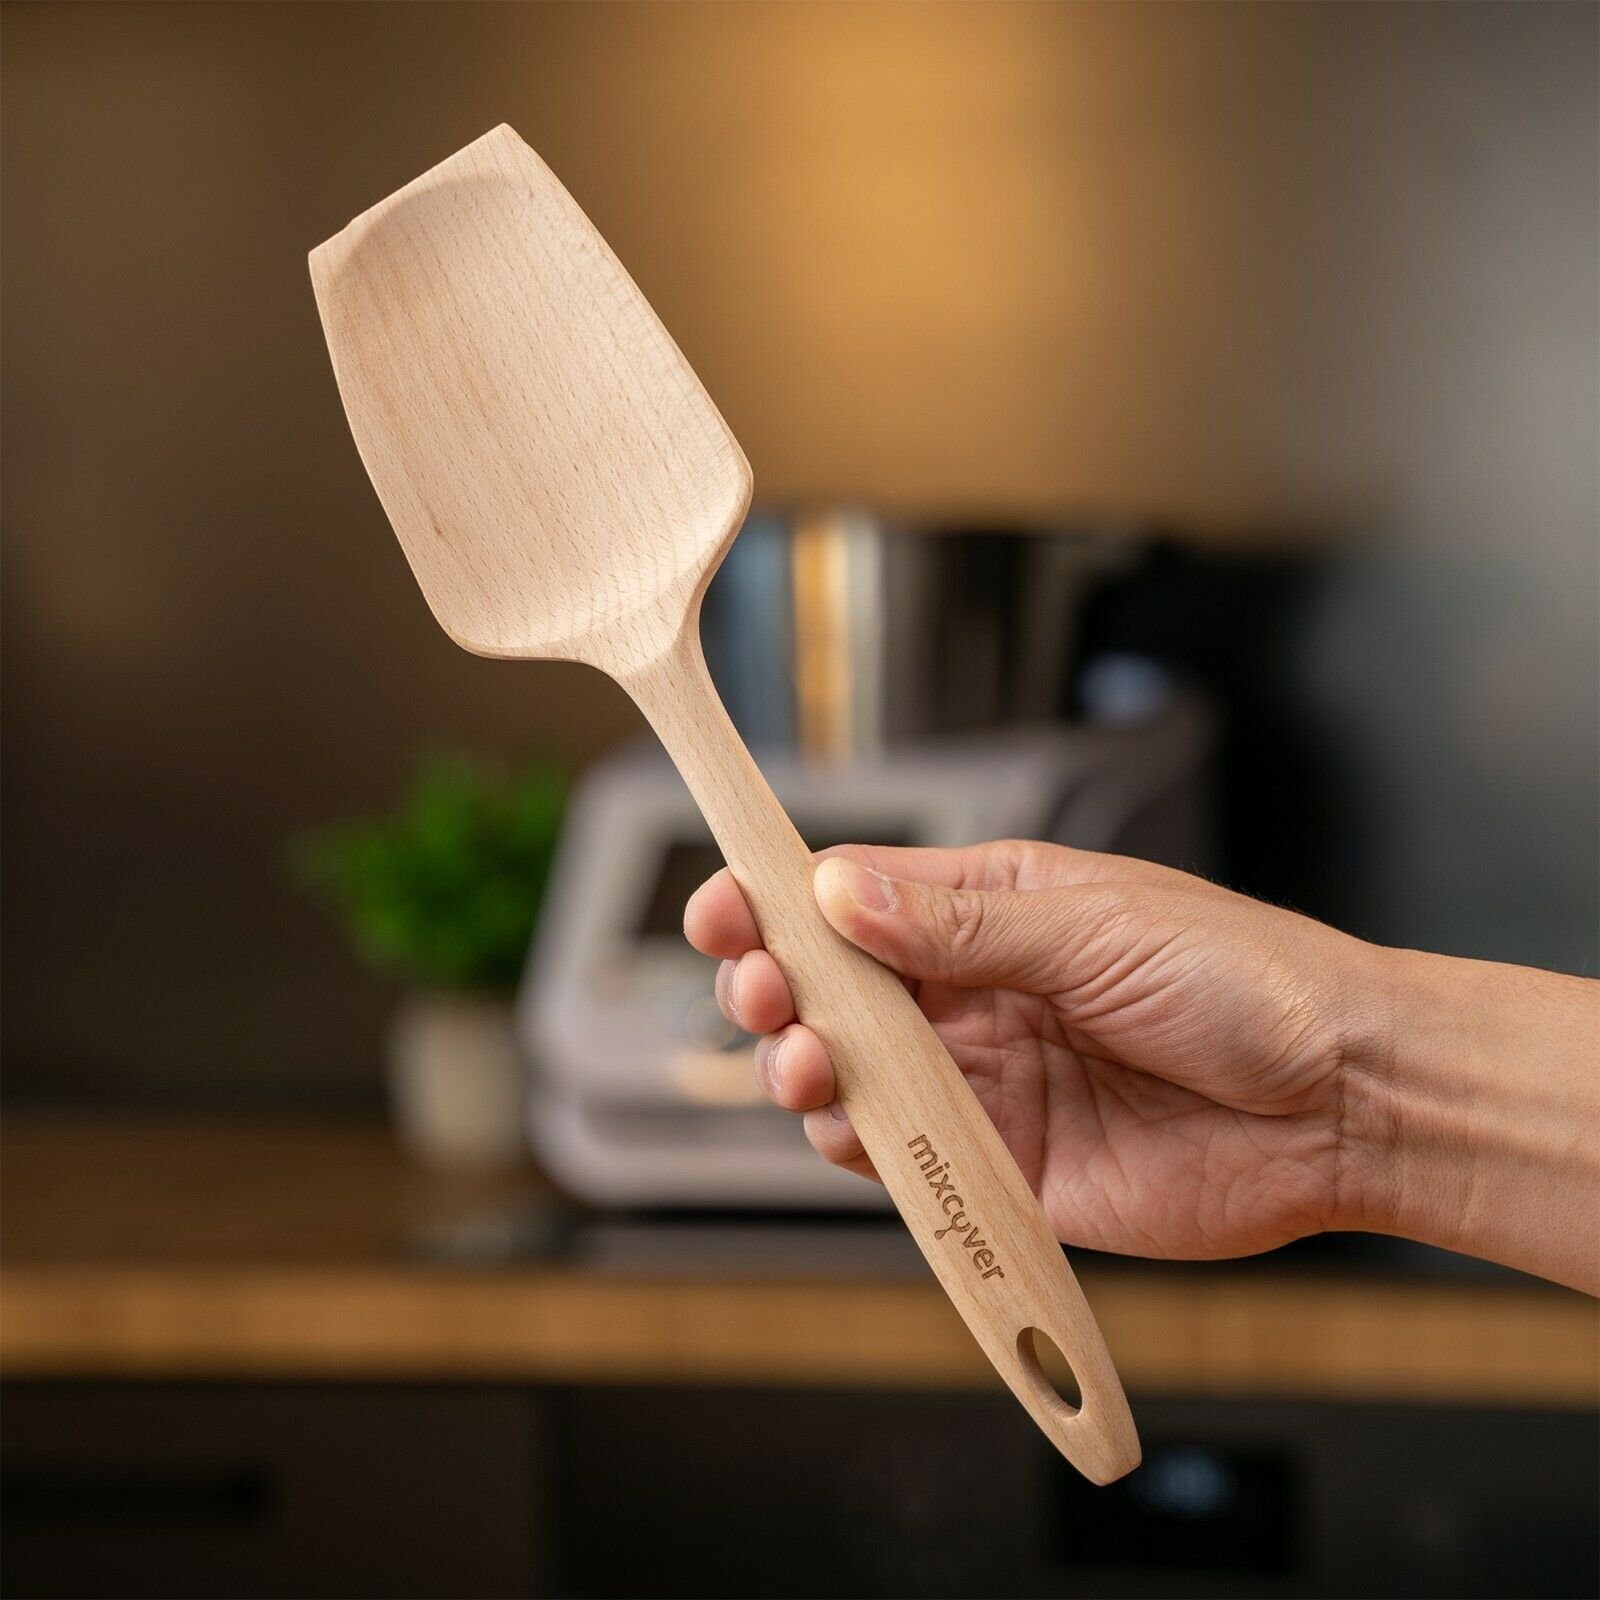 Cuisine Nachhaltiger Gravur Monsieur Holzspatel Mixcover Küchenmaschinen-Adapter mit Smart mixcover & Zubehör Connect